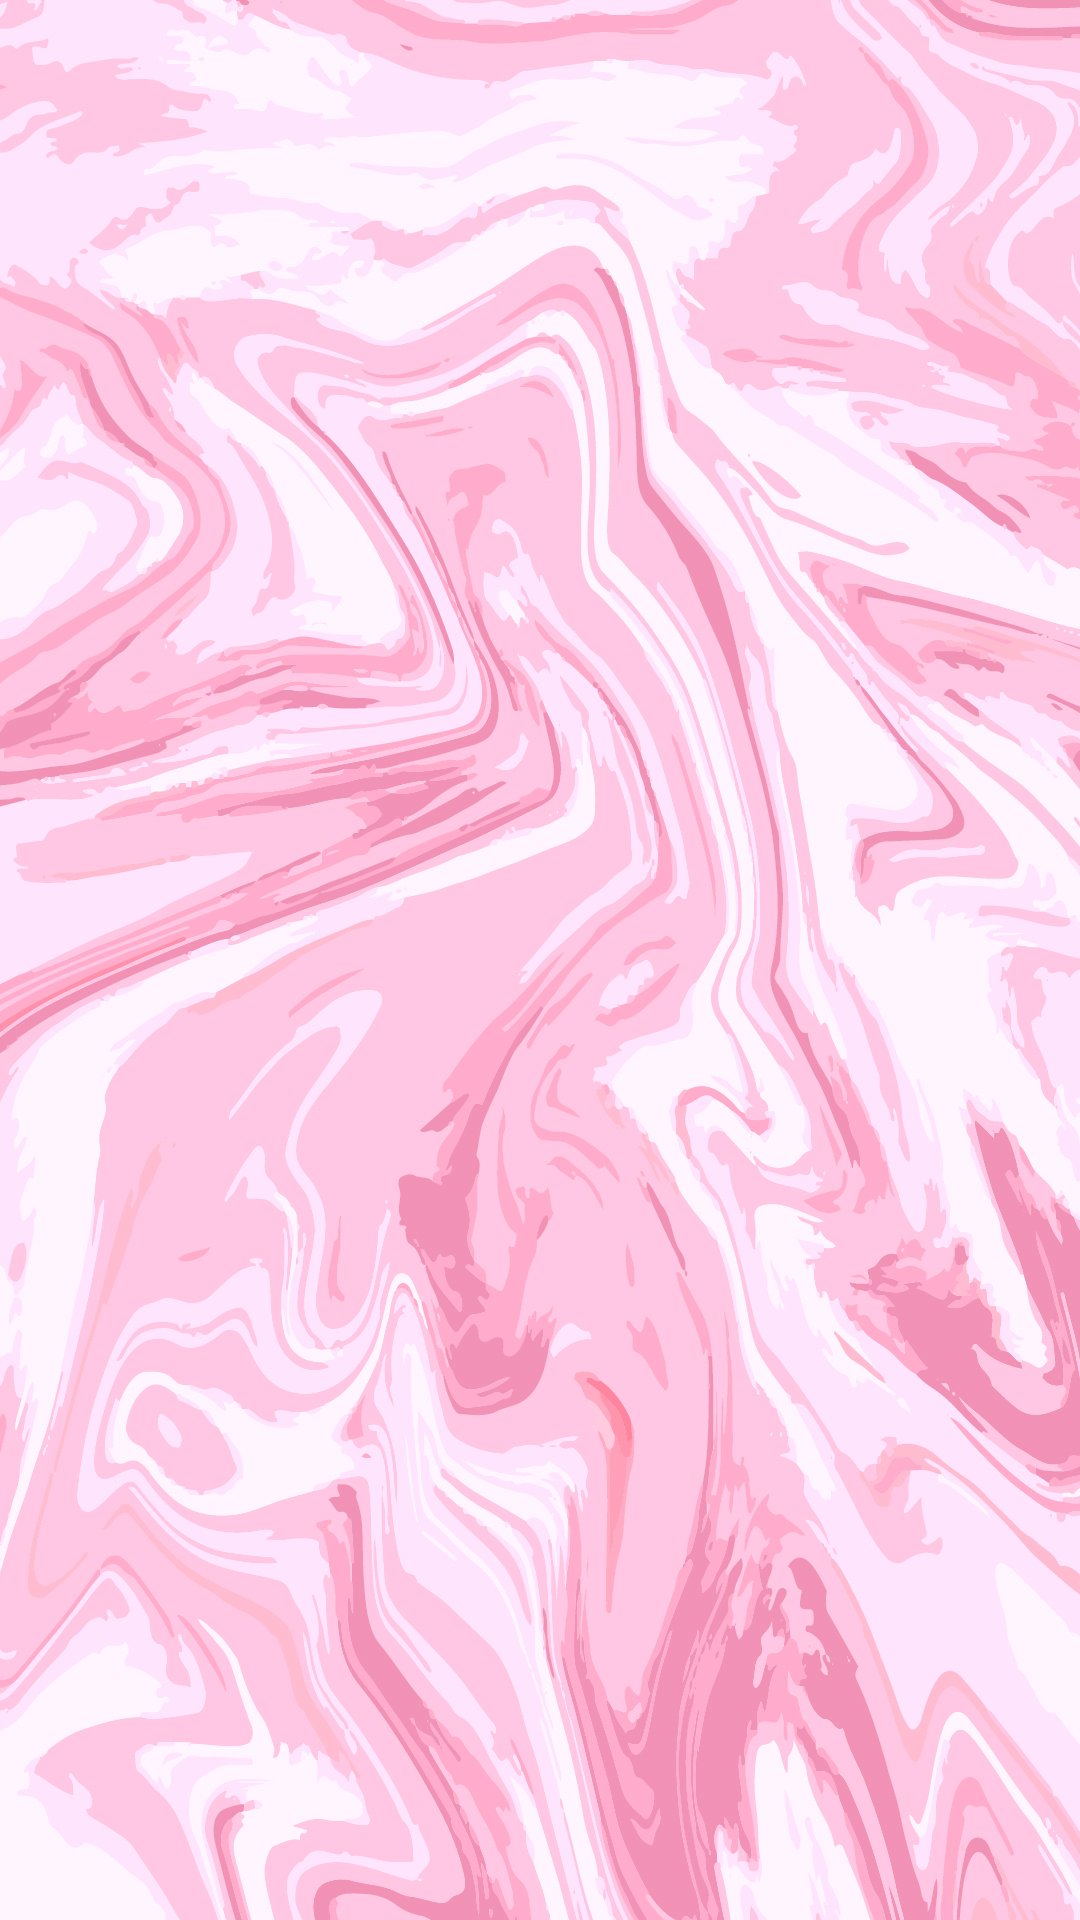 Hình ảnh nền Marble sắc hồng dễ dàng đưa bạn đến một thế giới mới, nơi mà công nghệ và thẩm mỹ hài hòa và tạo nên một không gian độc đáo. Hãy trang trí chiếc Iphone của bạn với hình nền đầy màu sắc để khai thác tối đa vẻ đẹp độc đáo của sản phẩm.